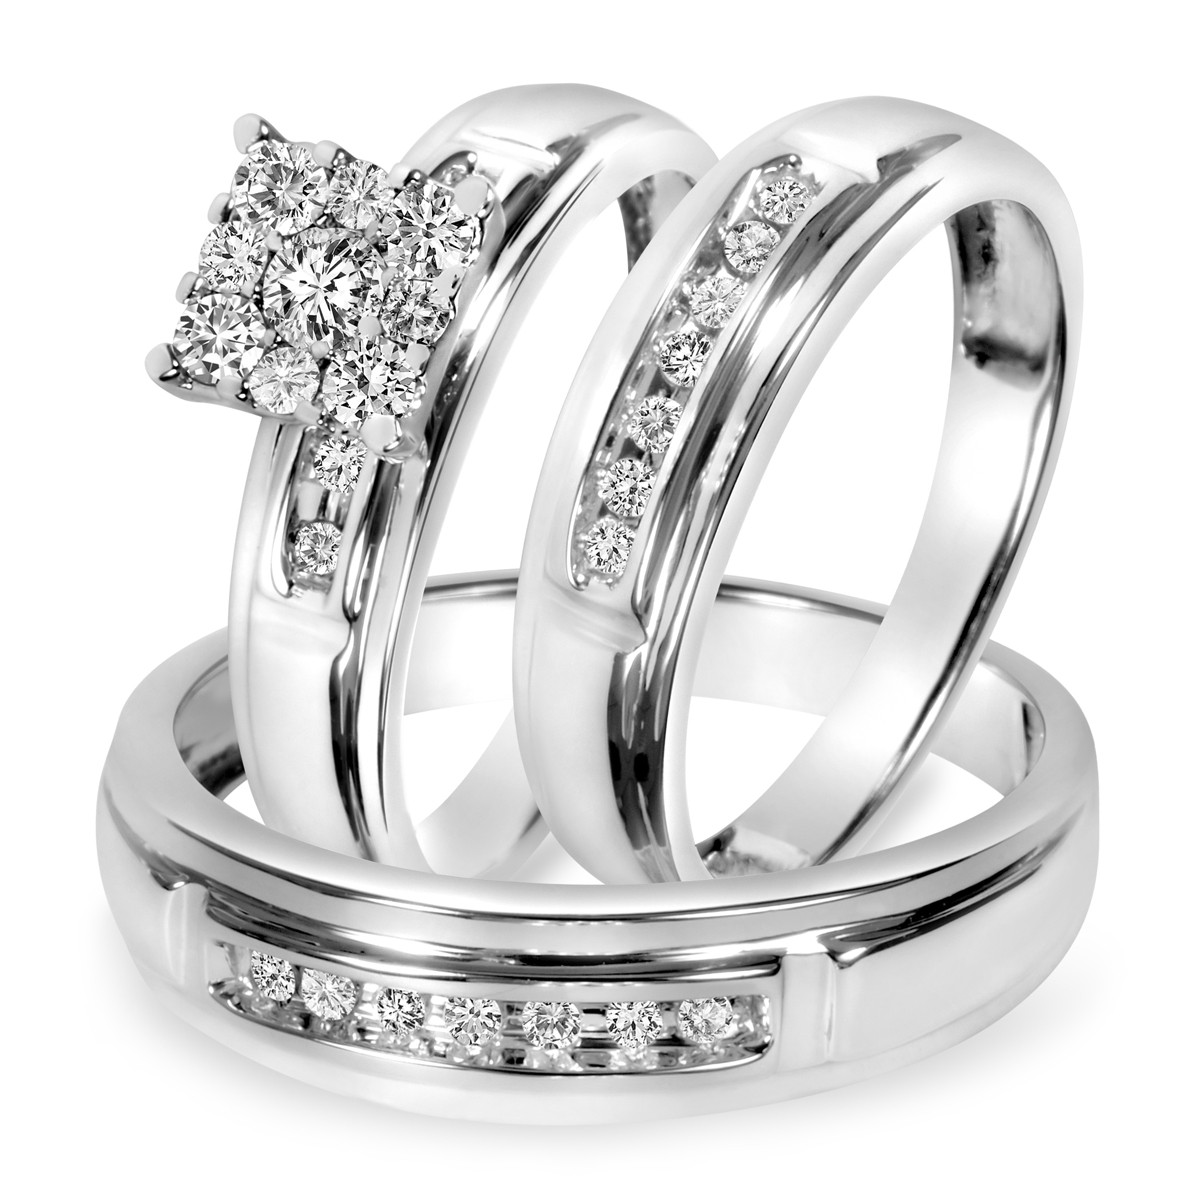 Wedding Ring Sets White Gold
 1 2 CT T W Diamond Trio Matching Wedding Ring Set 10K